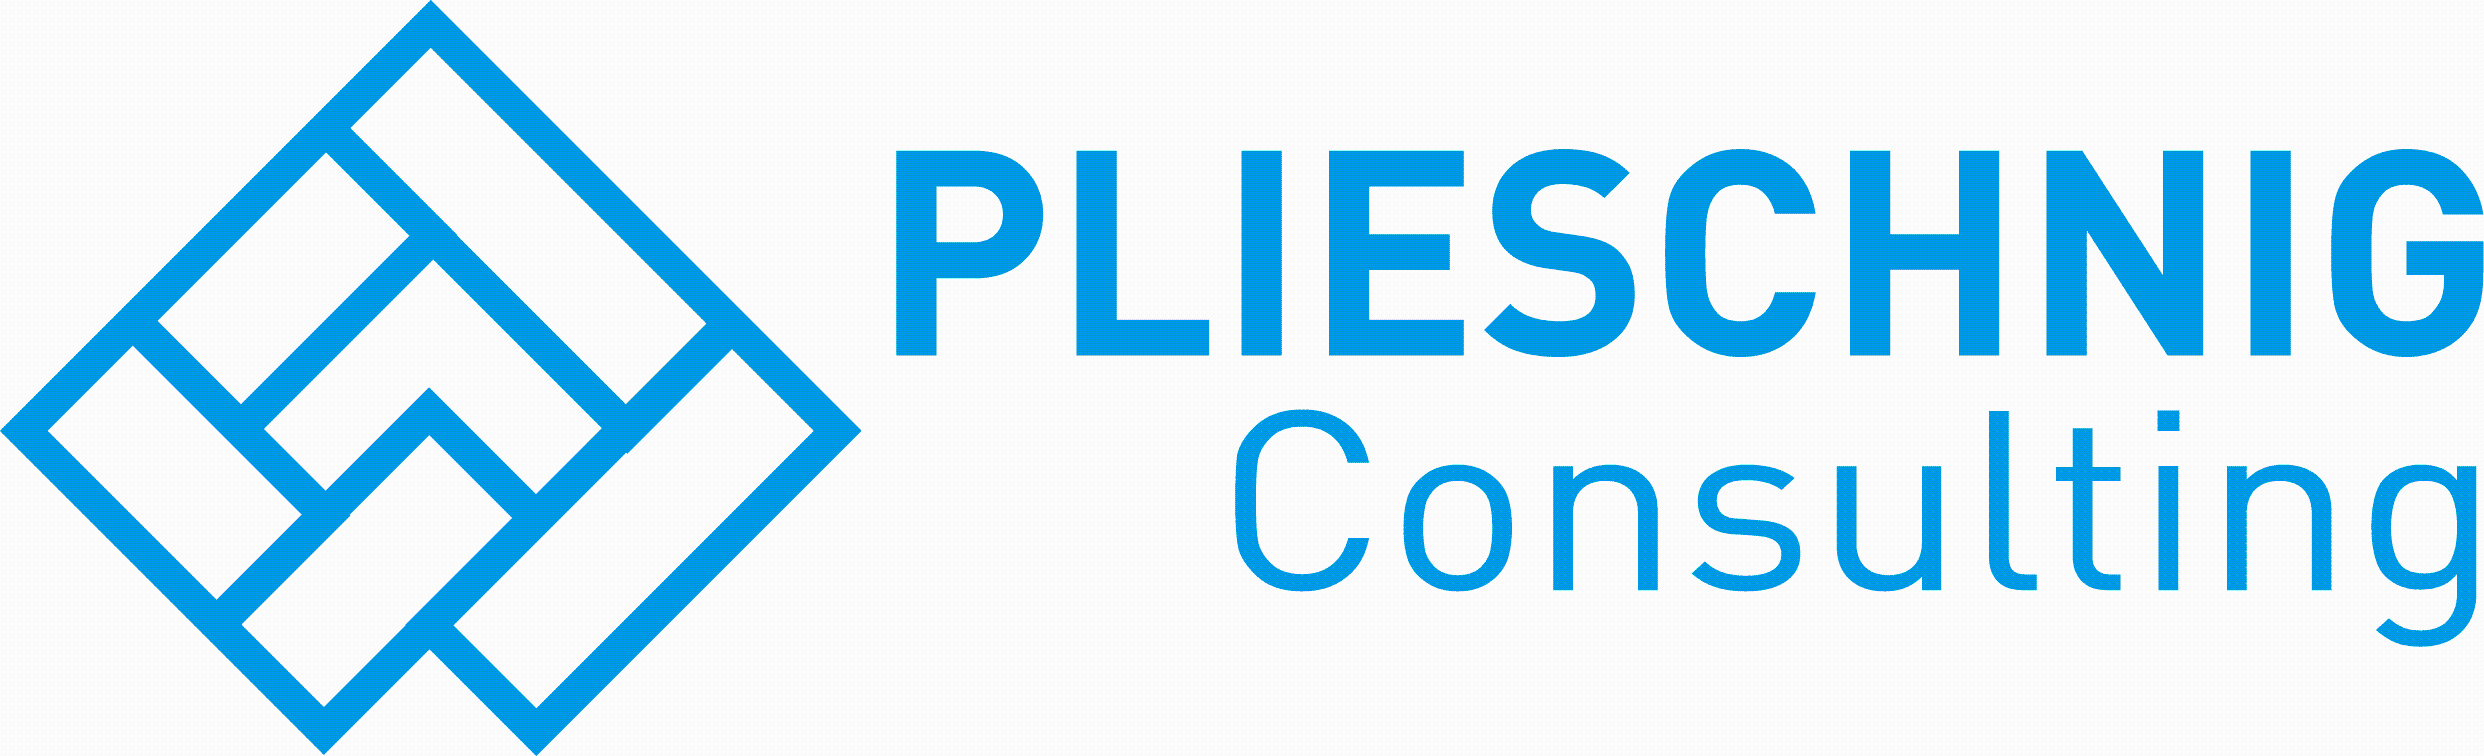 Logo Plieschnig Consulting